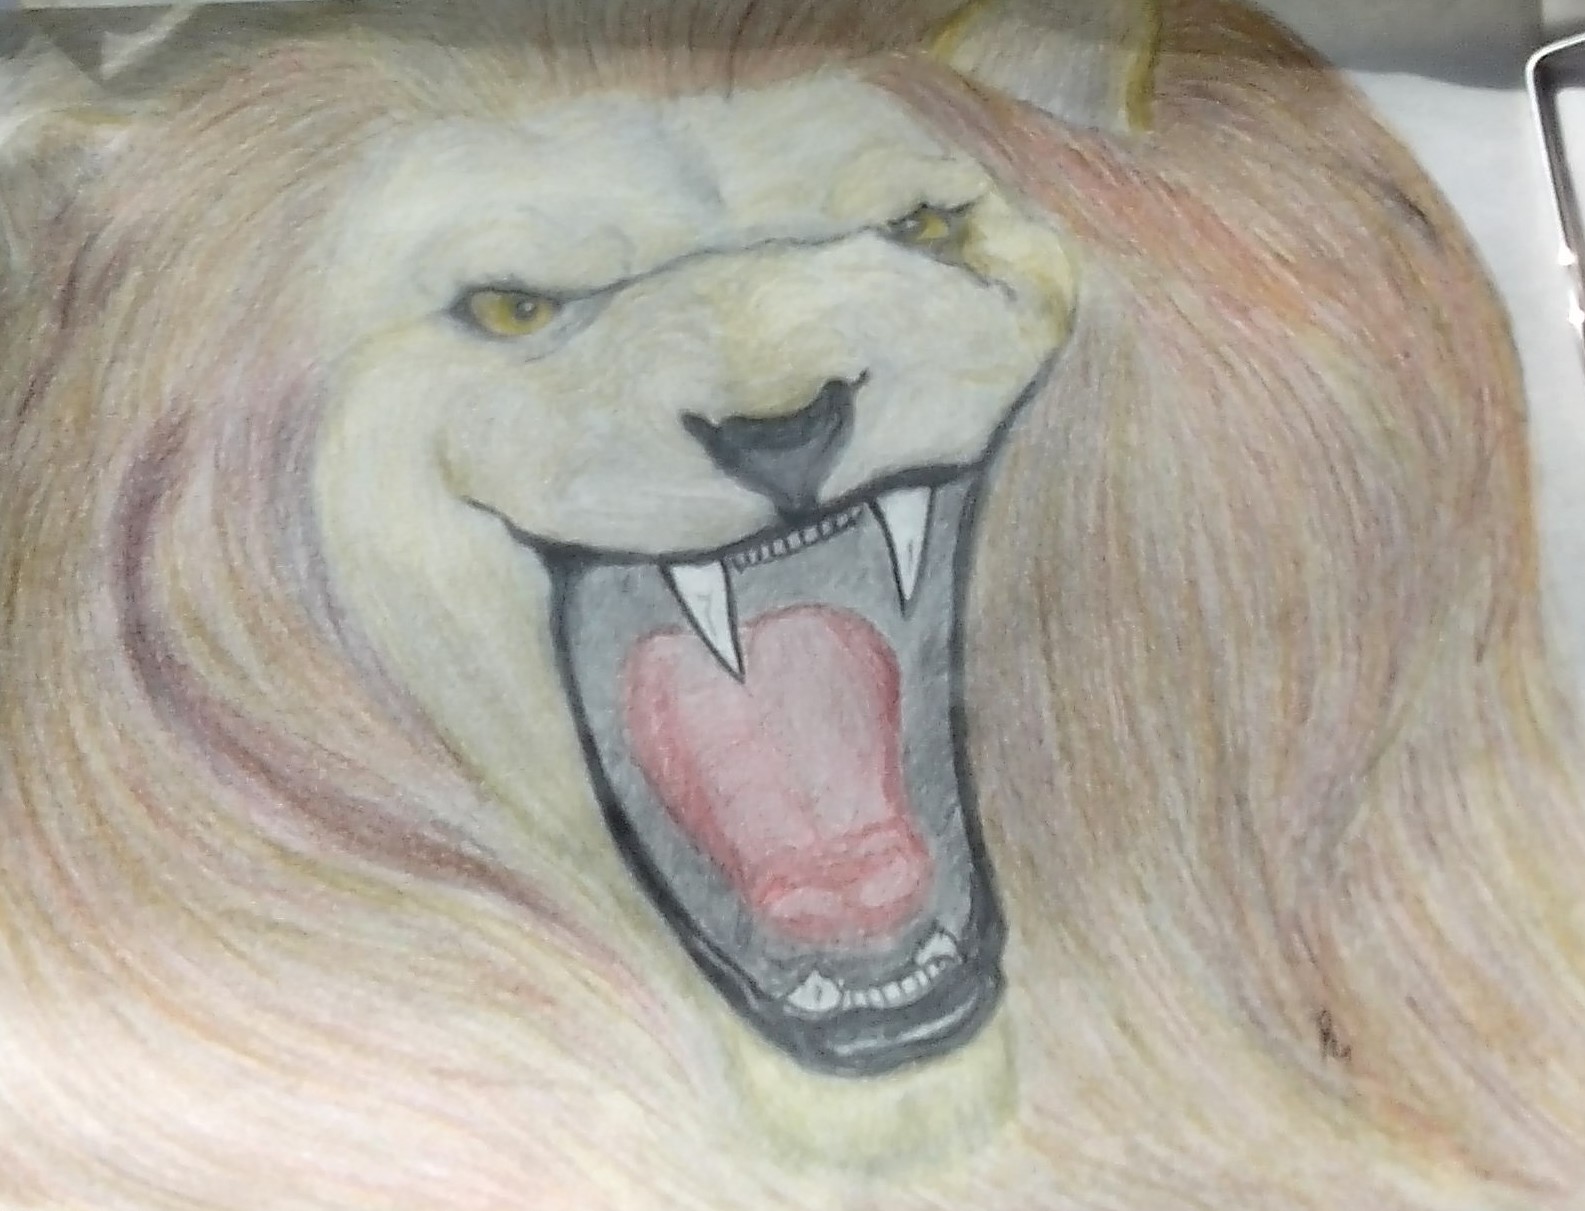 lions roar by smokeybandit1